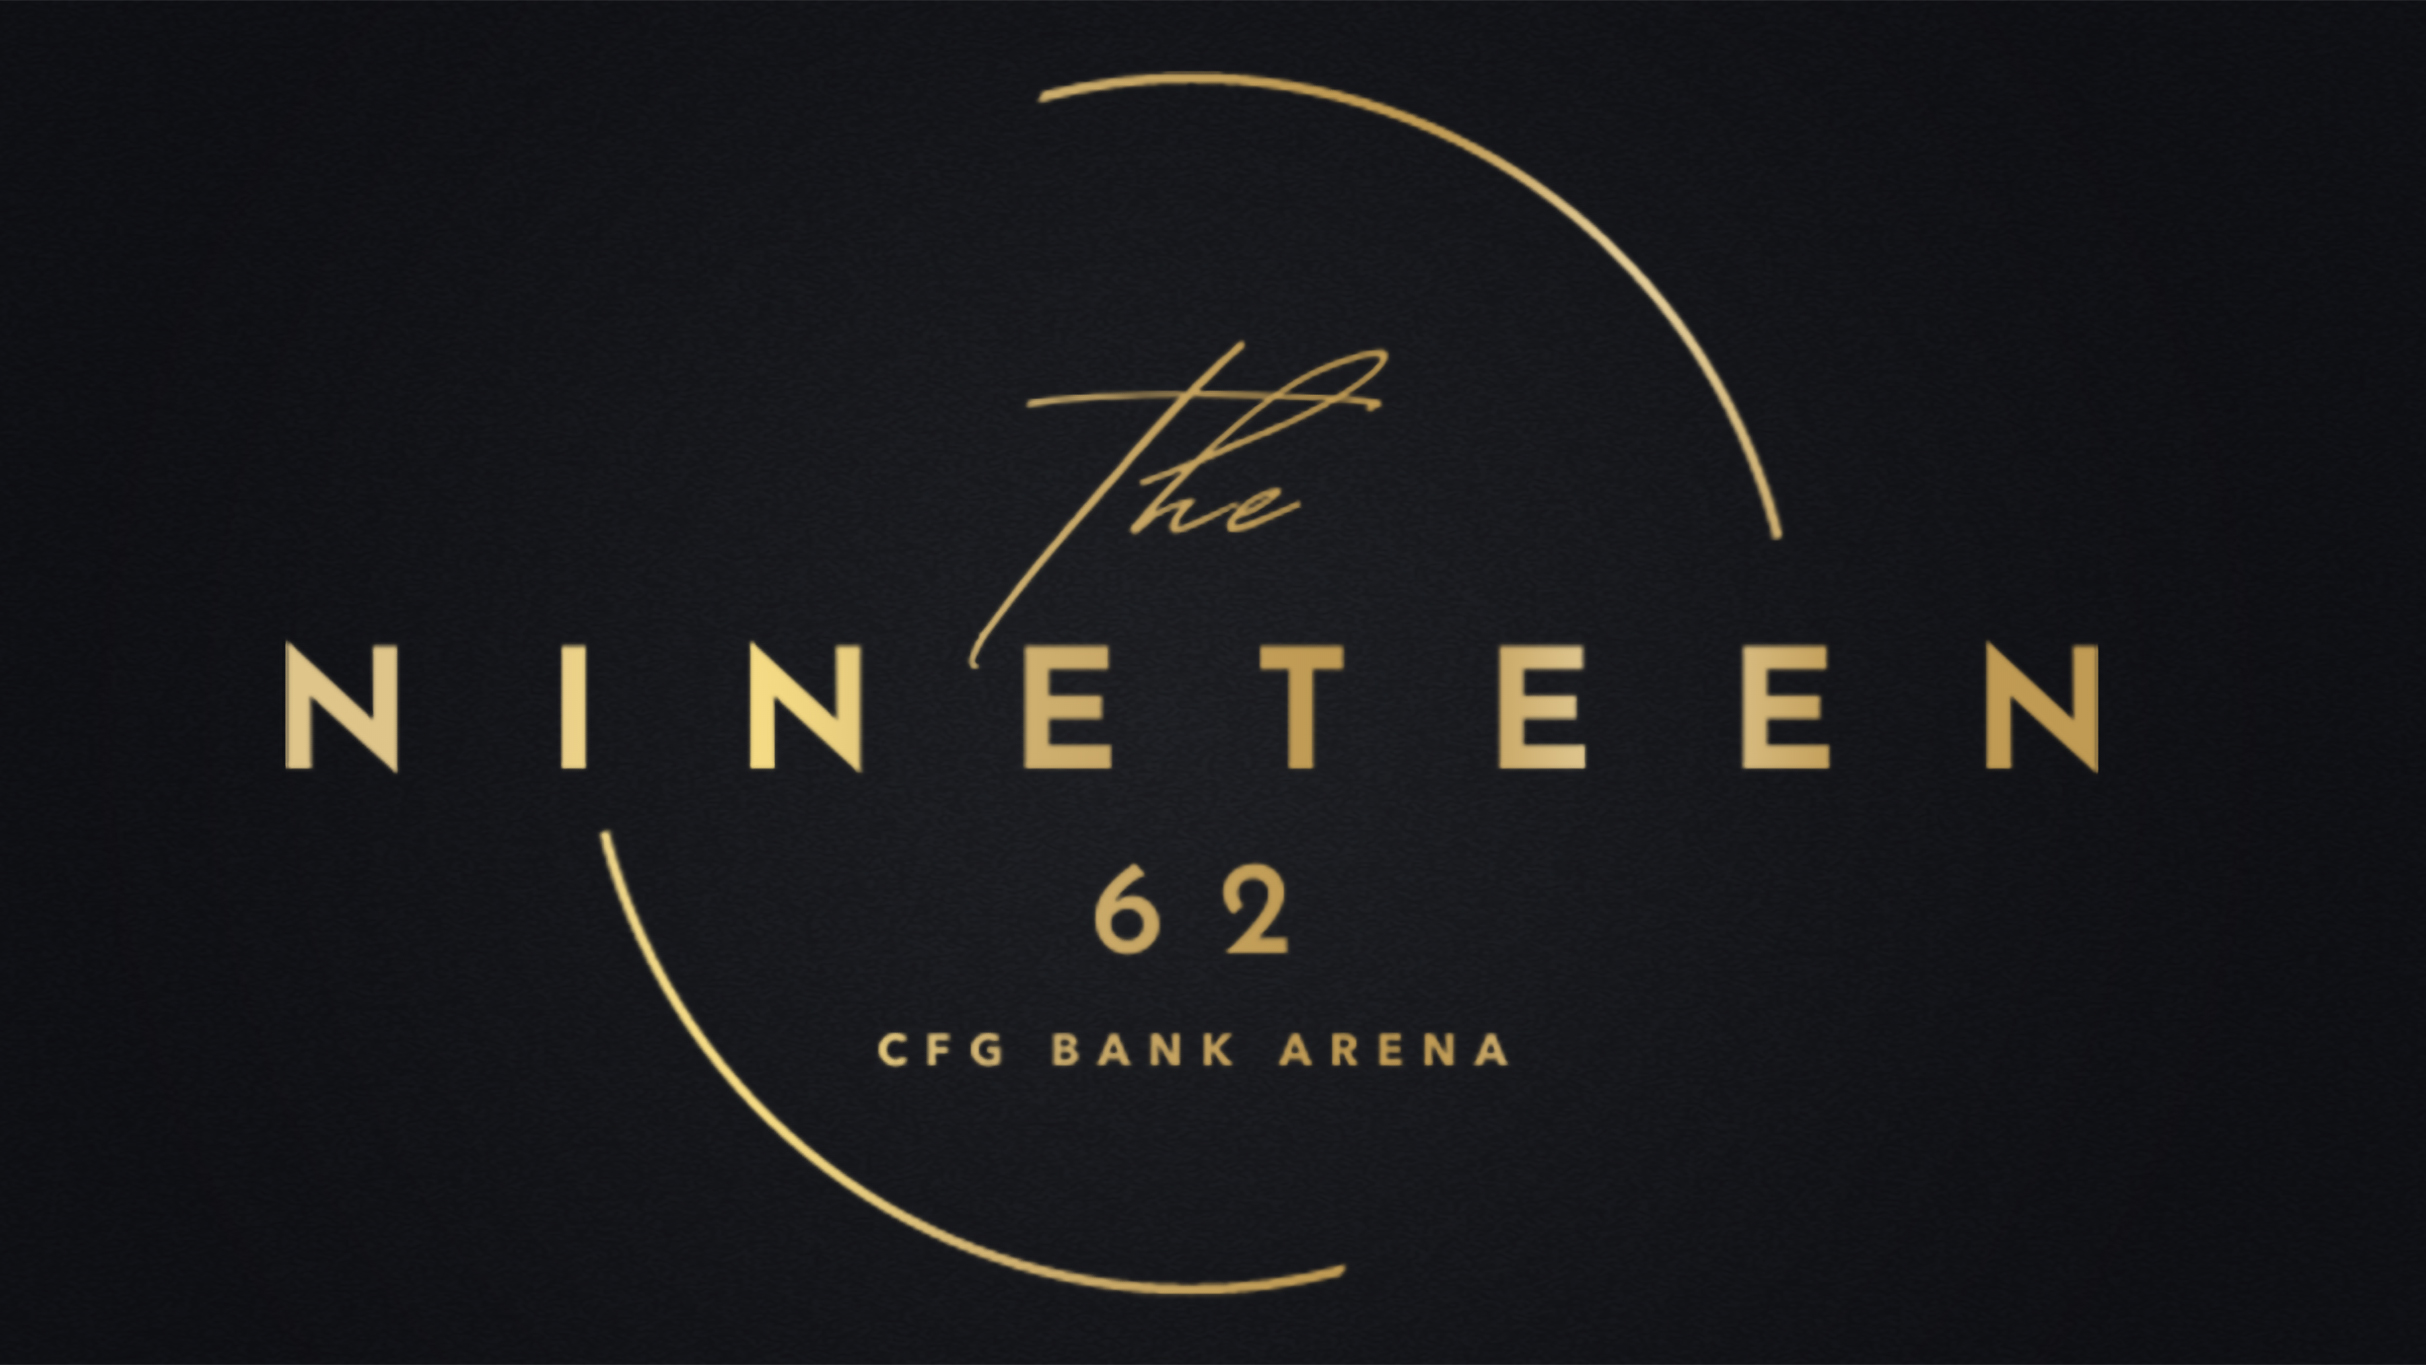 The NINETEEN 62 at CFG Bank Arena-Christian Nodal